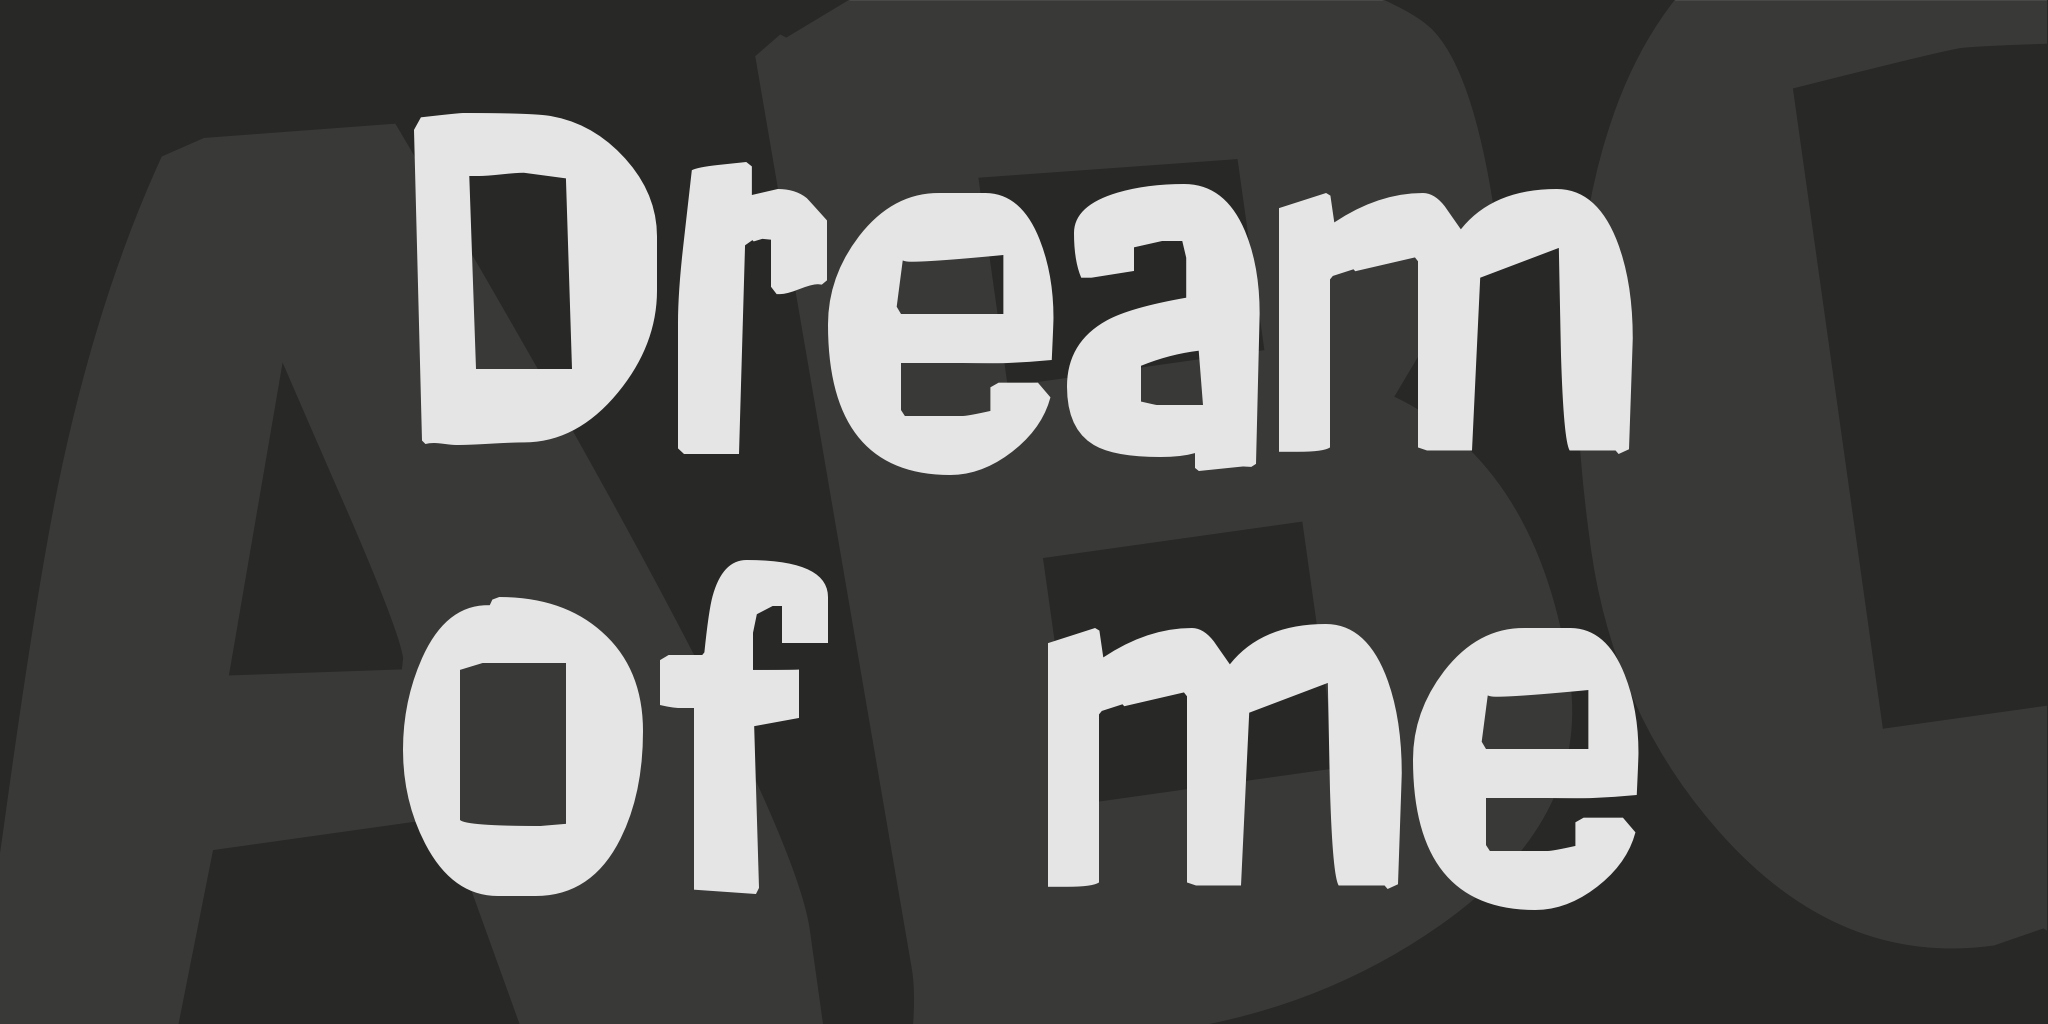 Dream Of Me